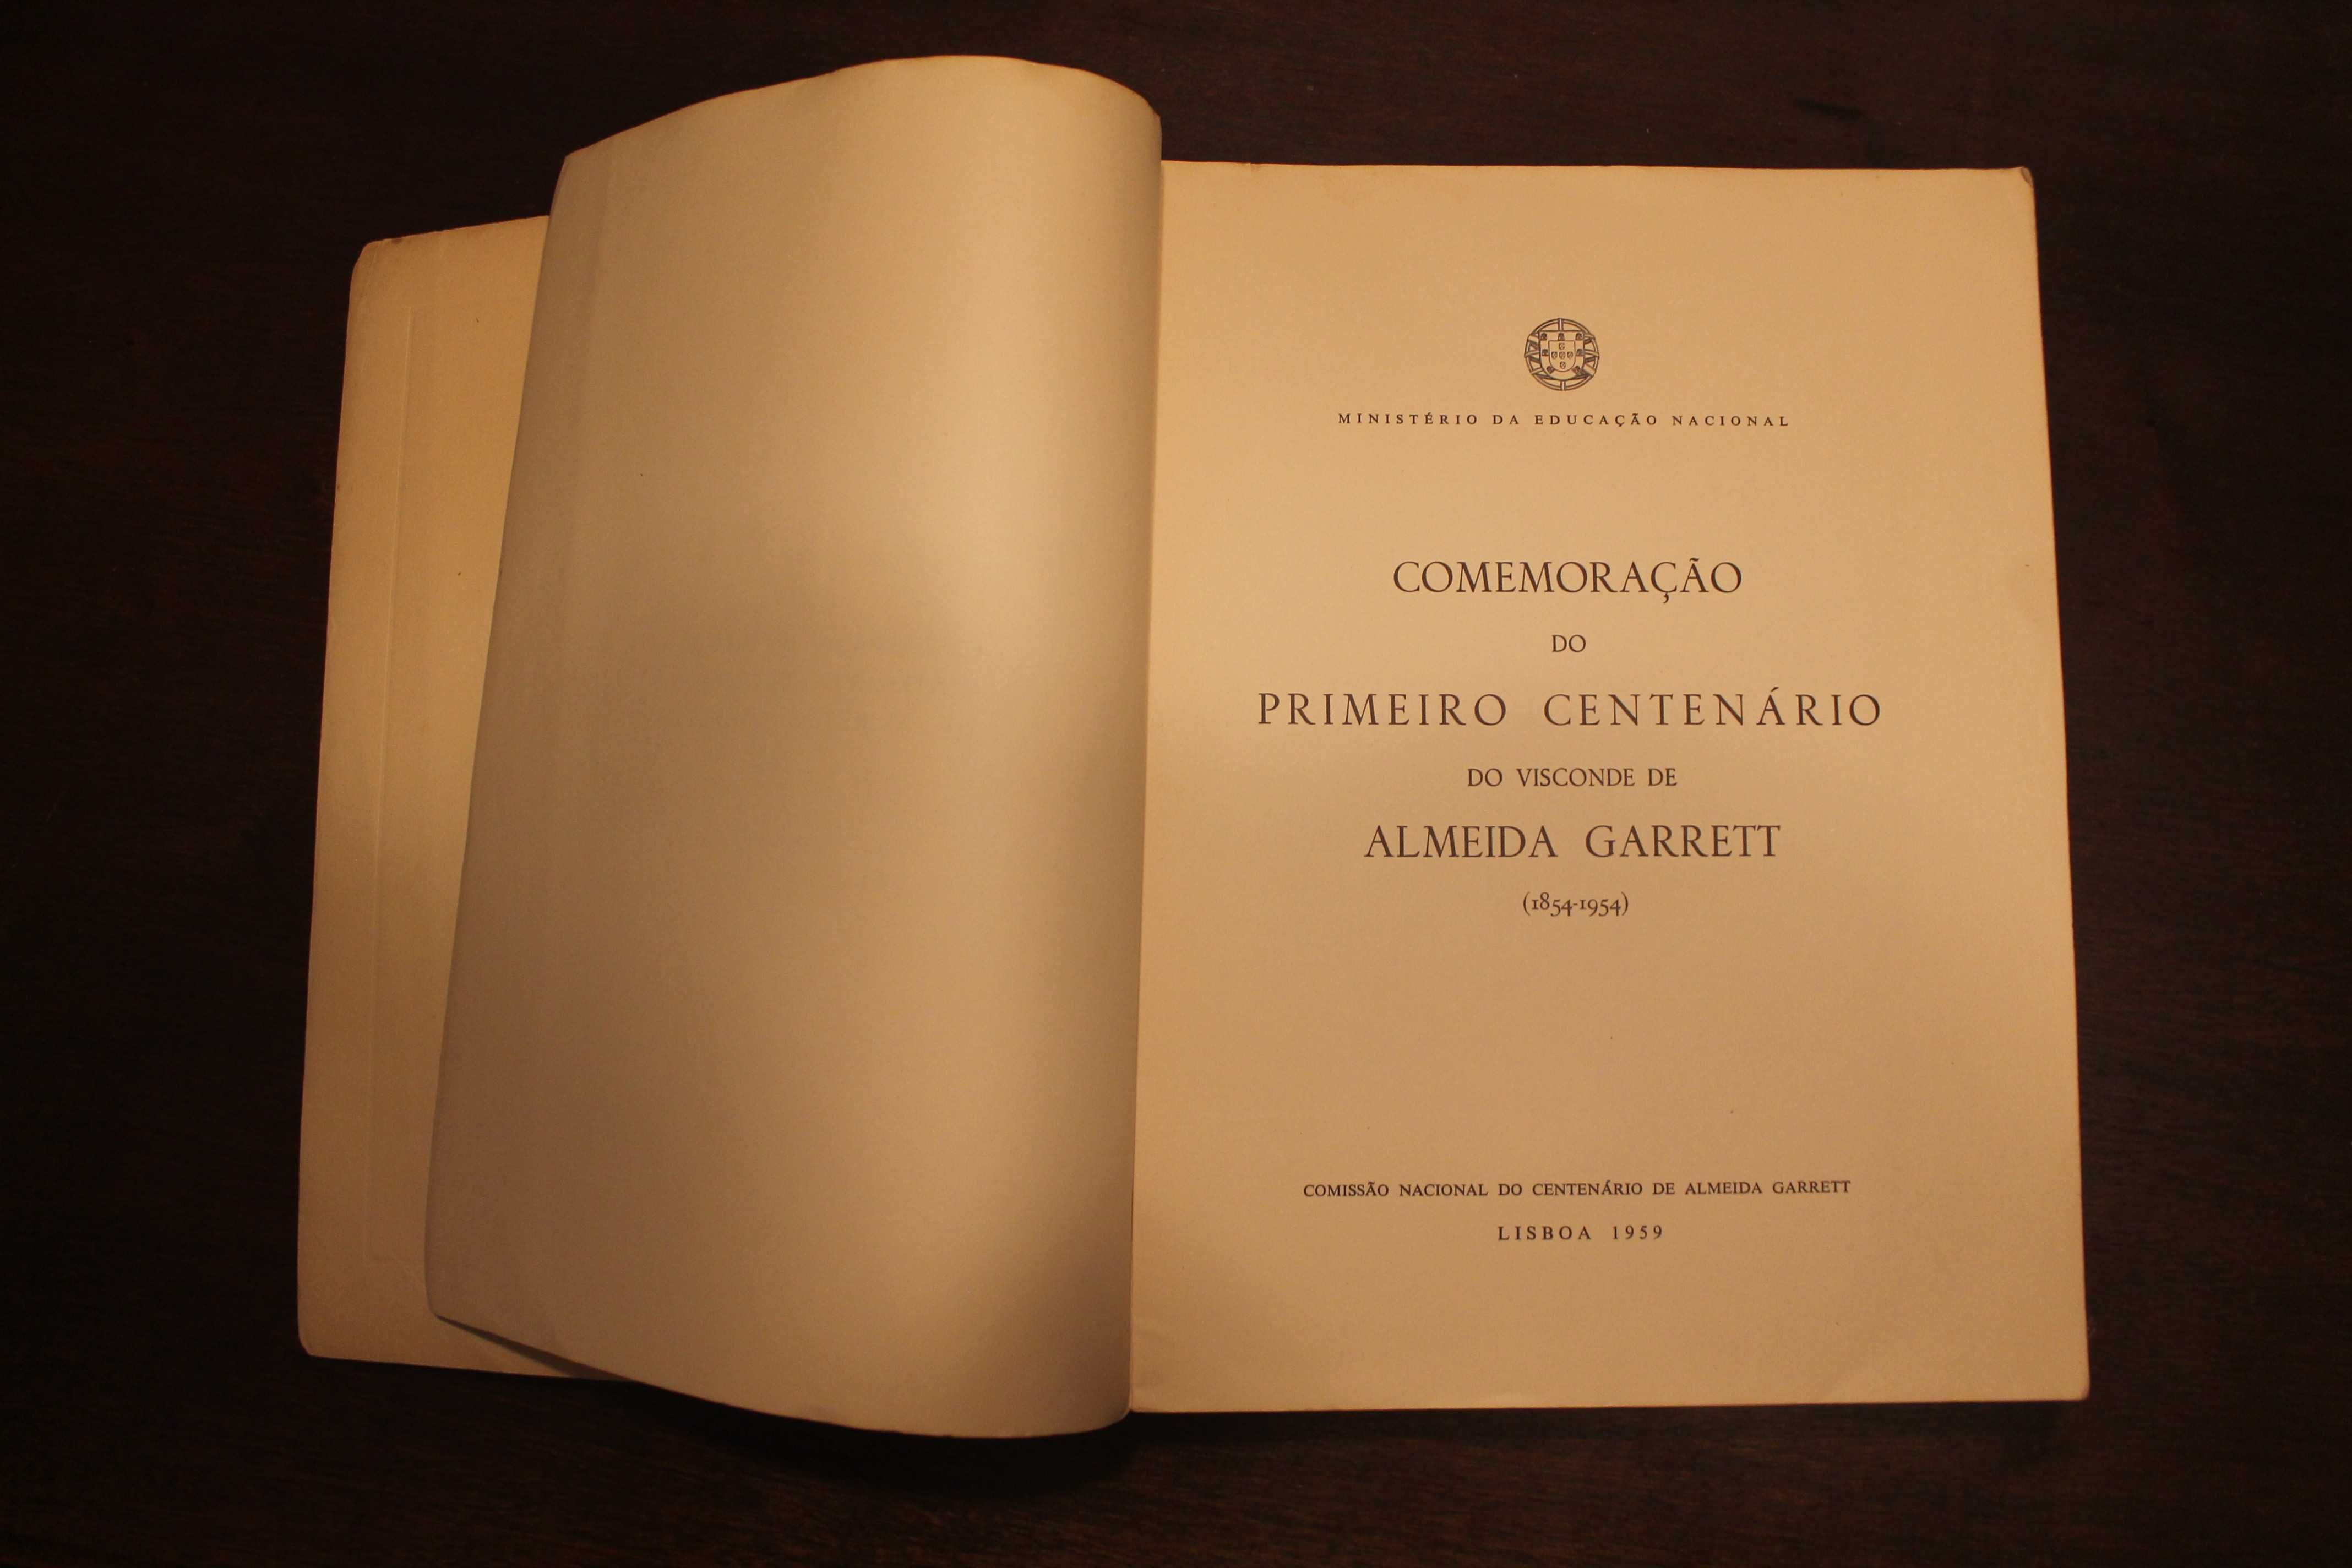 Comemoração do Primeiro Centenário do Visconde de Almeida Garret